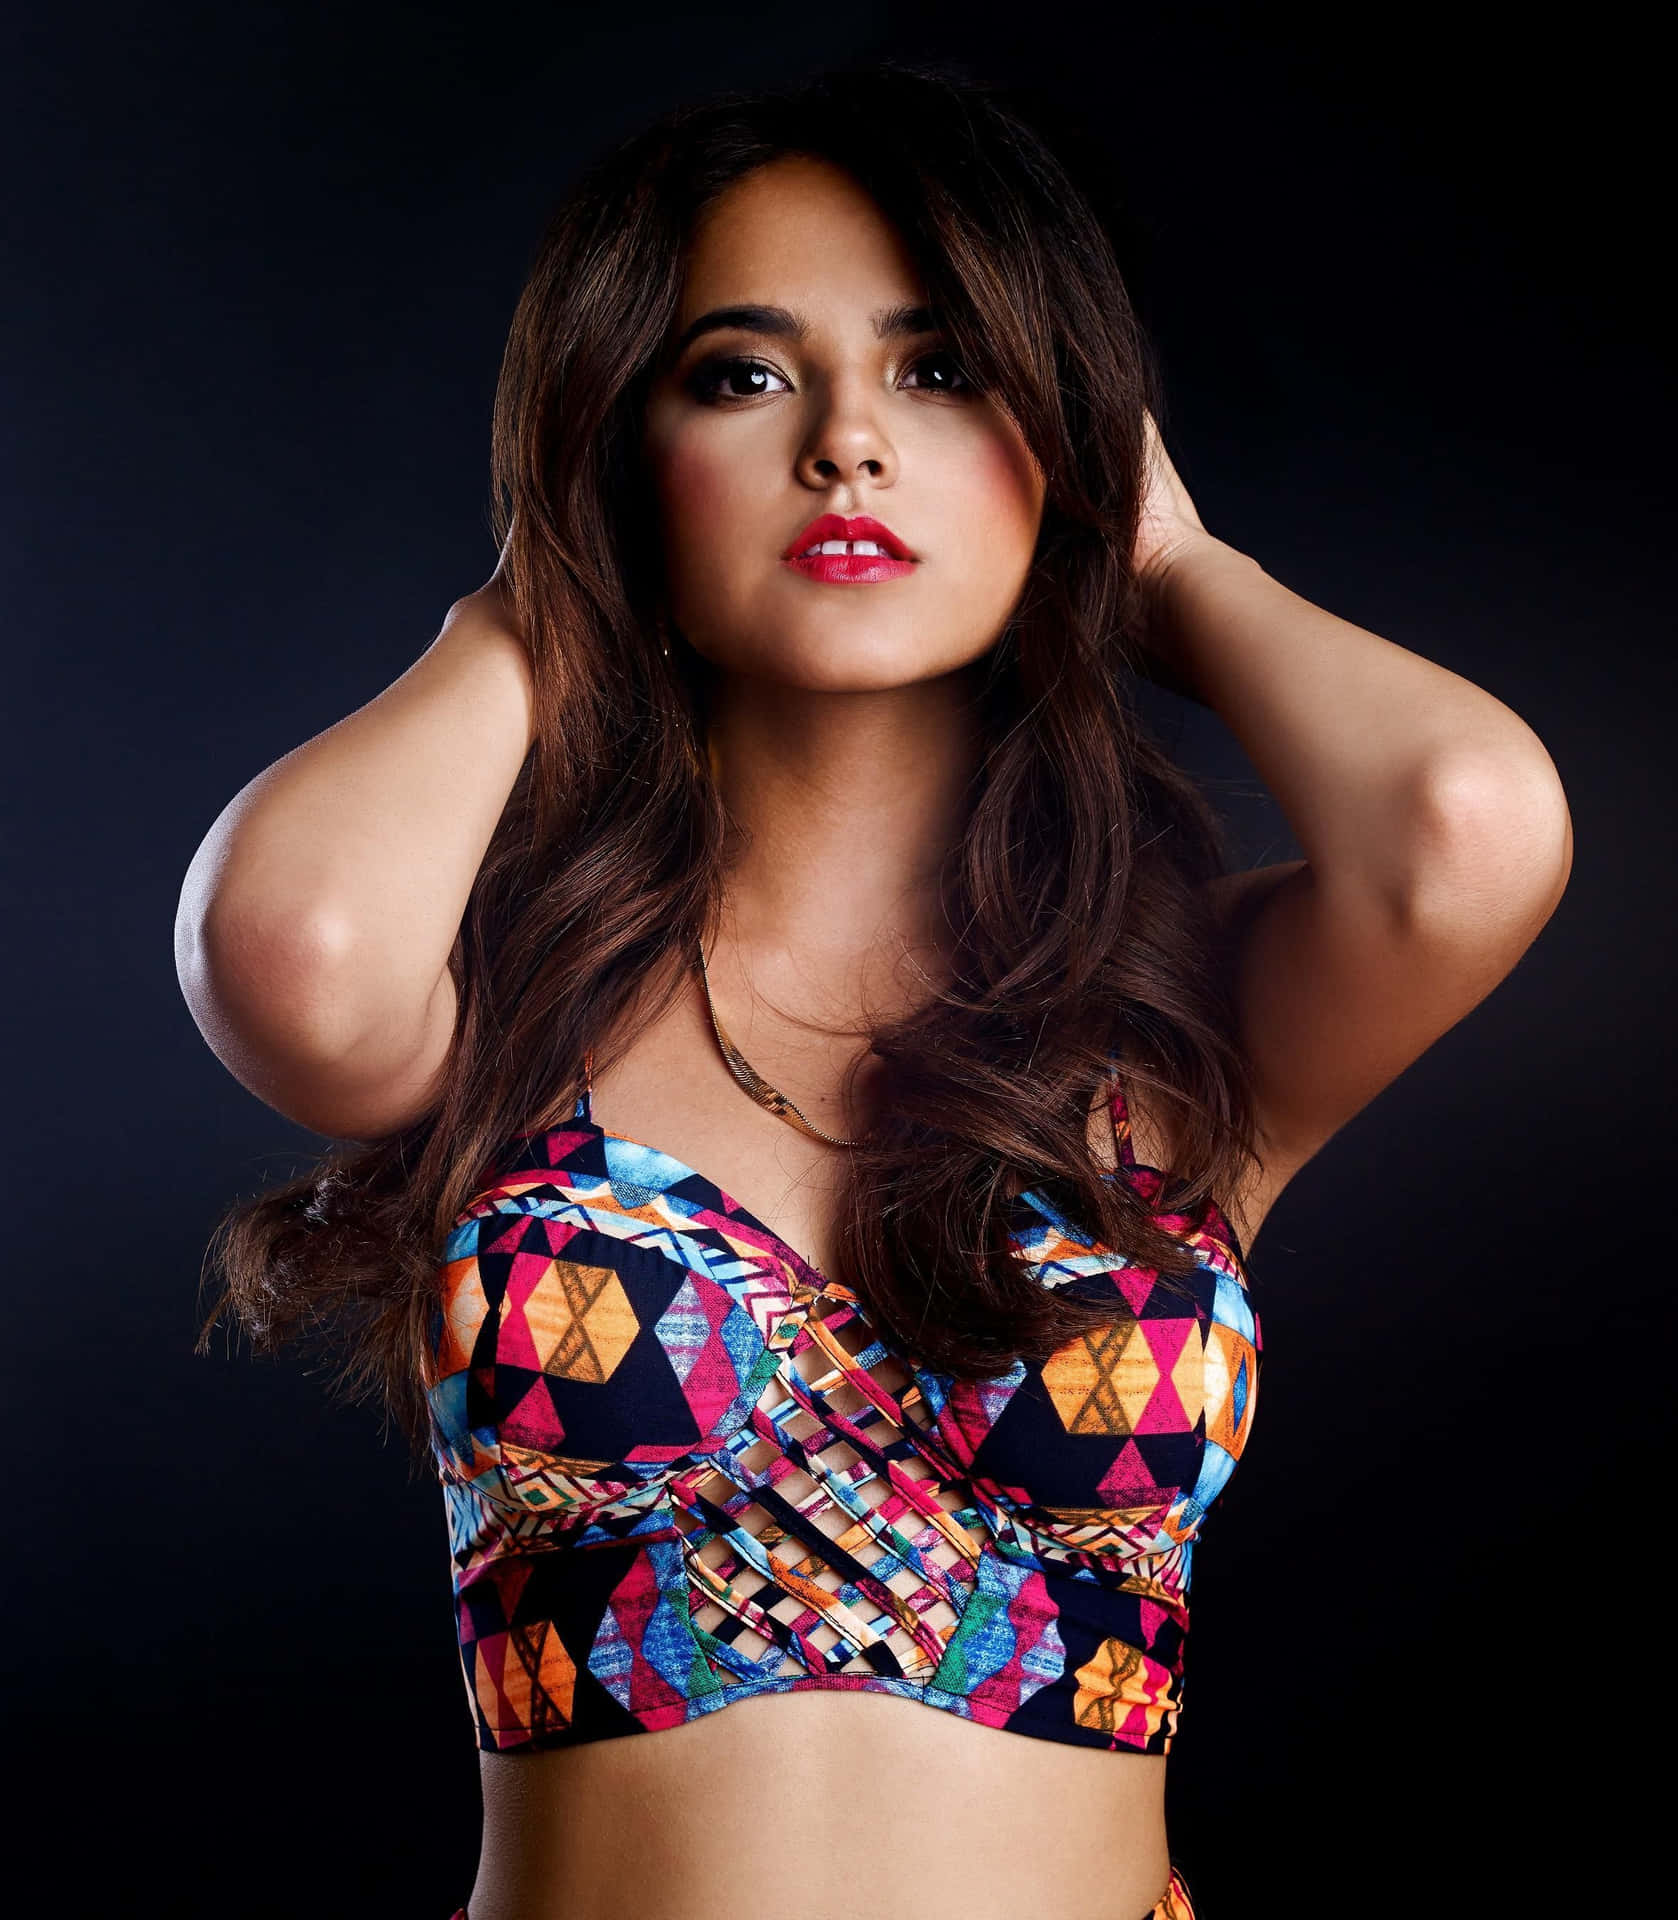 Becky G – A Multitalented Latin Singer